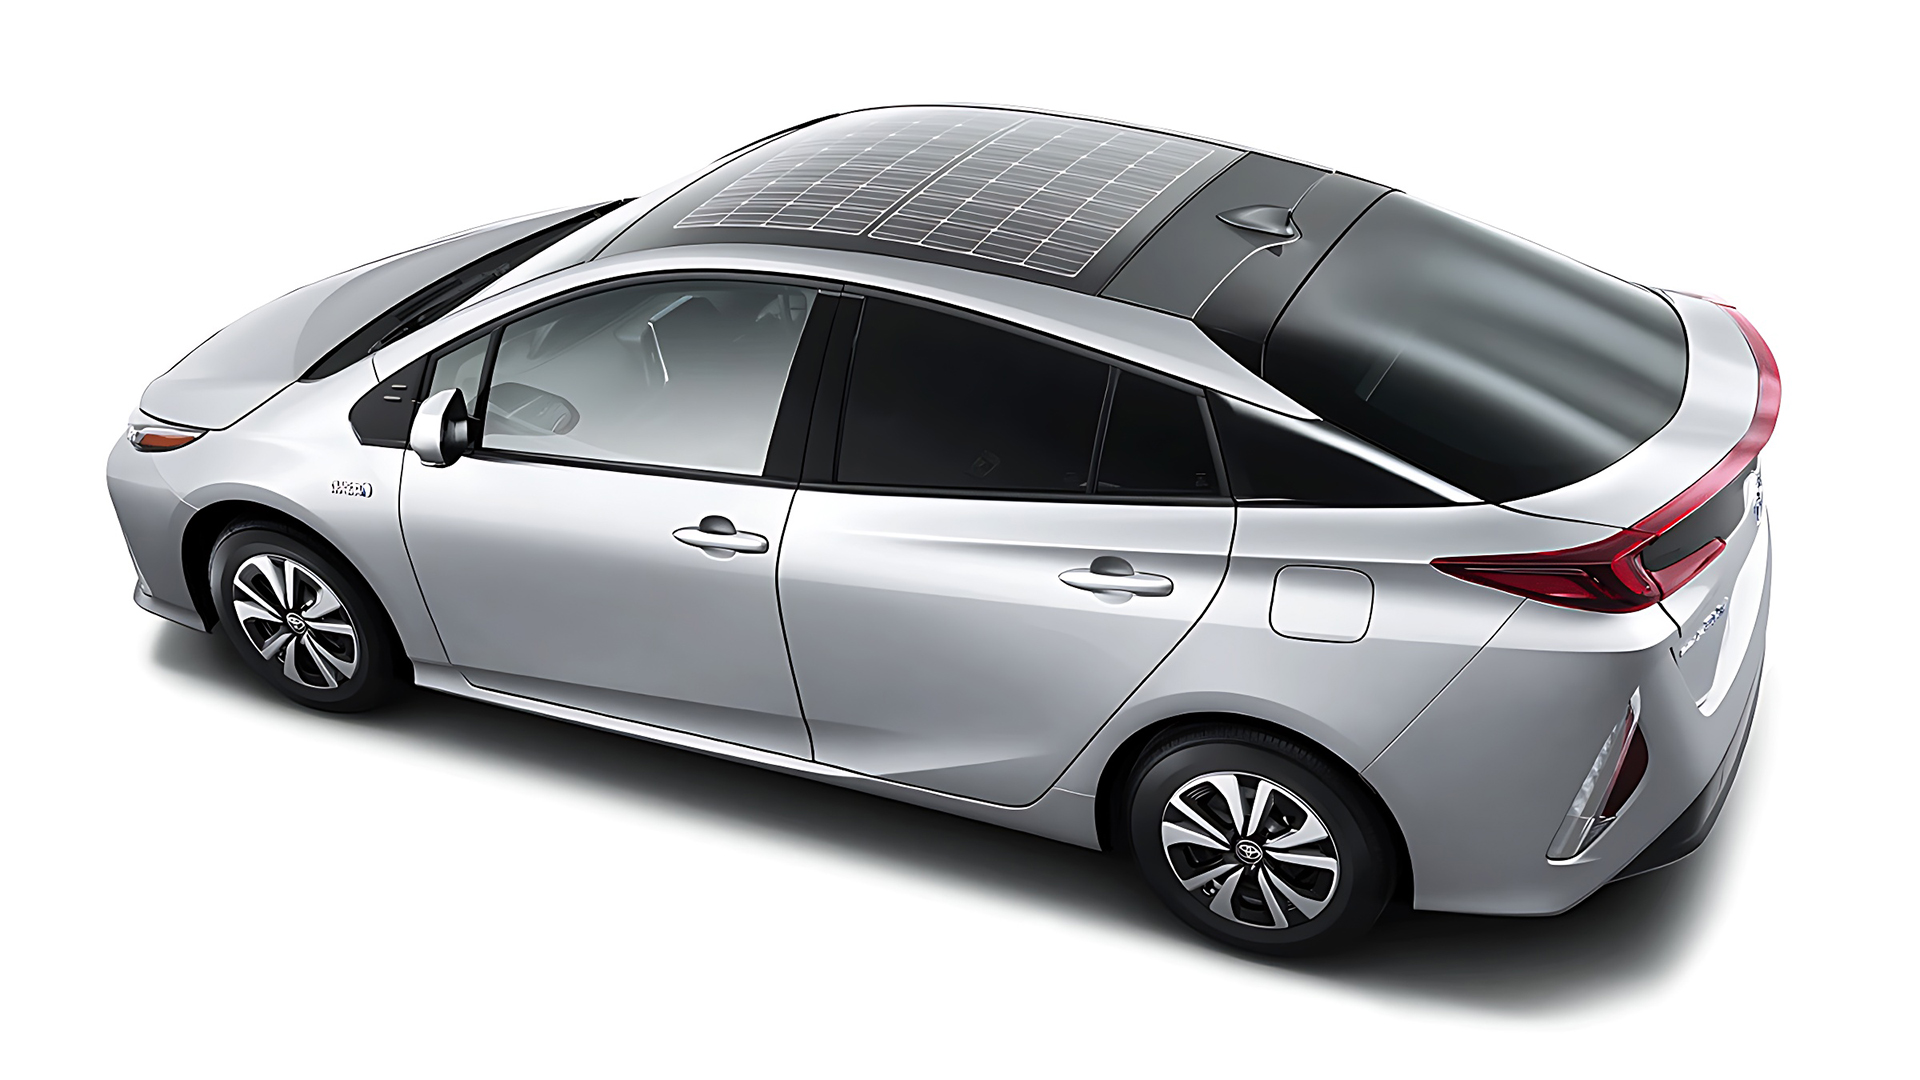 Toyota Prius Híbrido montadora afirma que veículo utiliza radiação solar coletada por painel fotovoltaico e fornecer autonomia de até 1250 Km